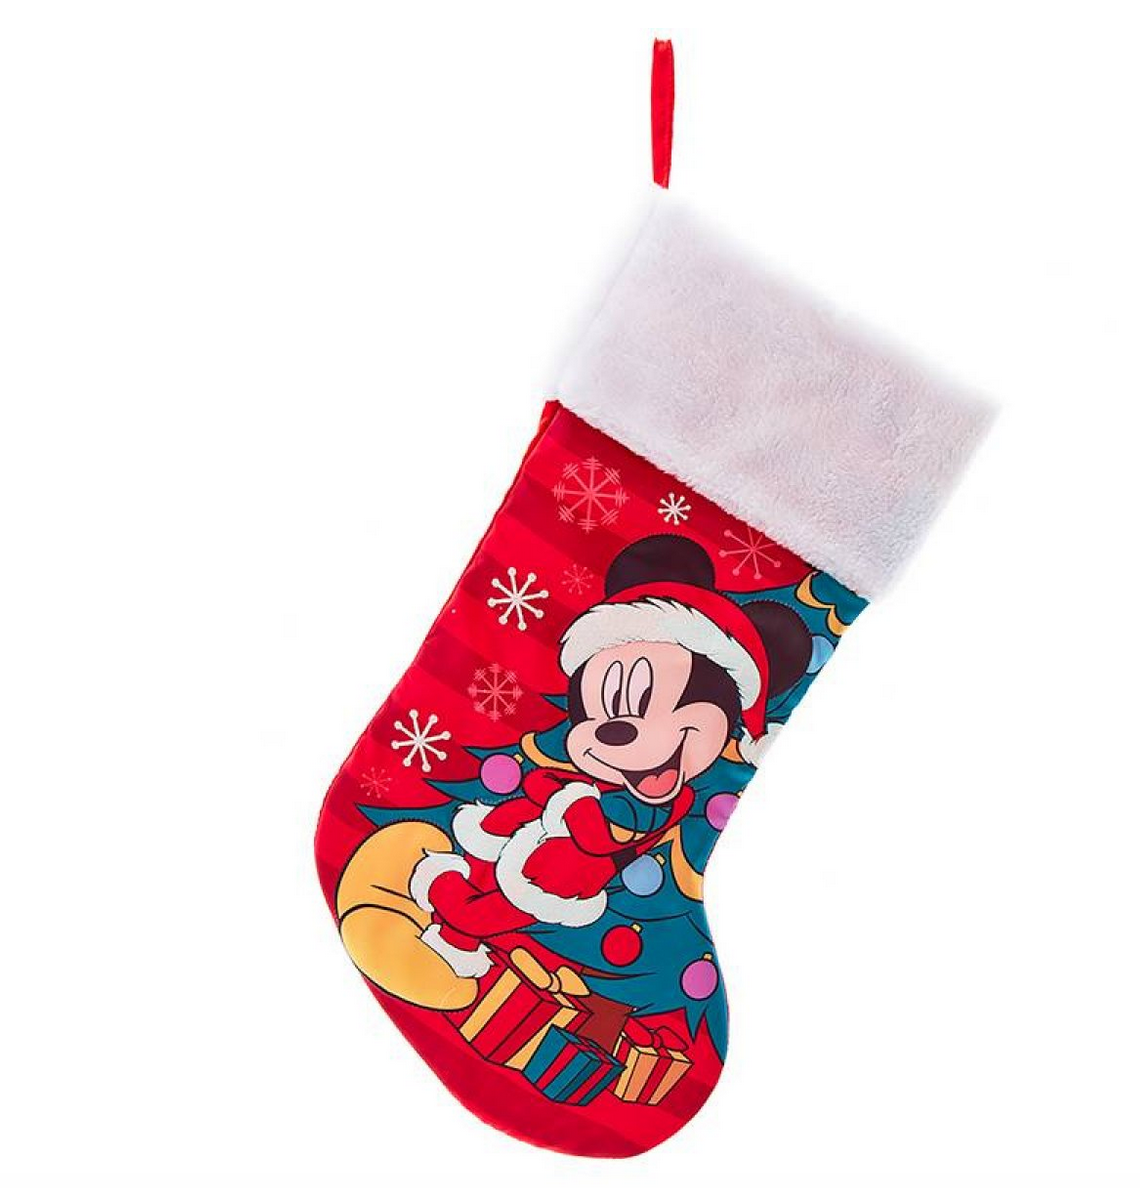 Mickey Mouse julesok - Disney julesok til børn og barnlige sjæle